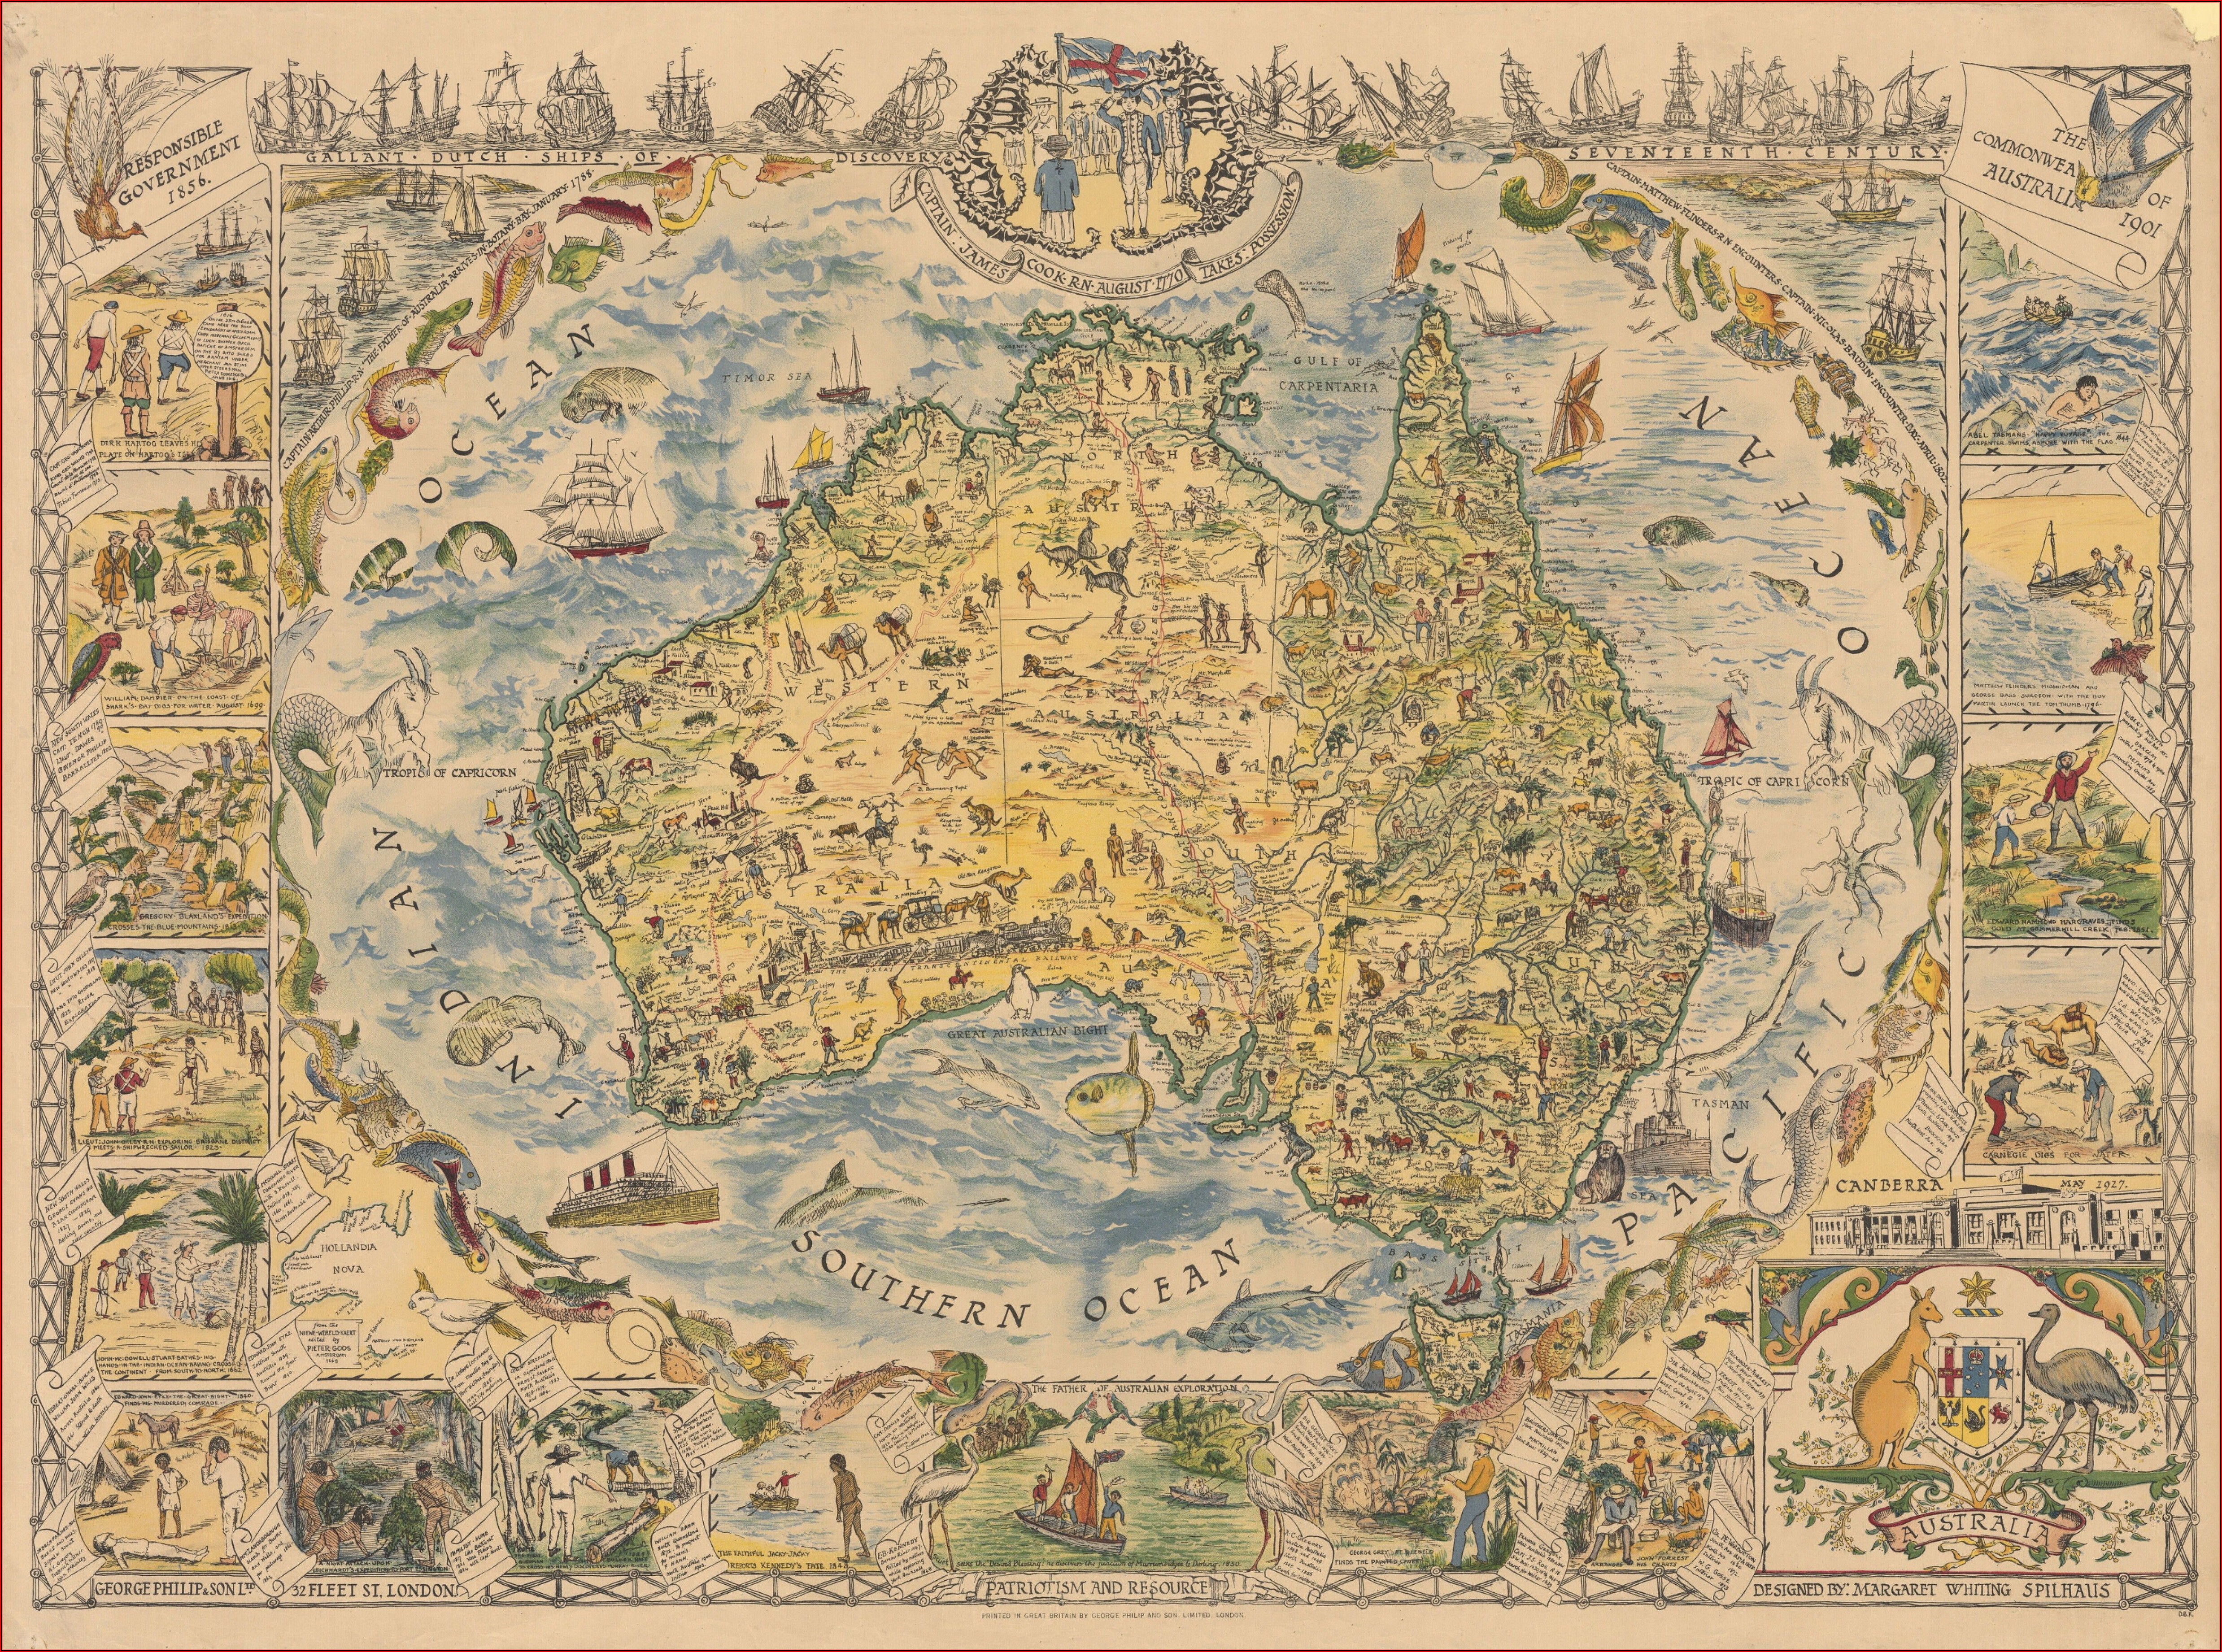 Paper Topo Maps Australia